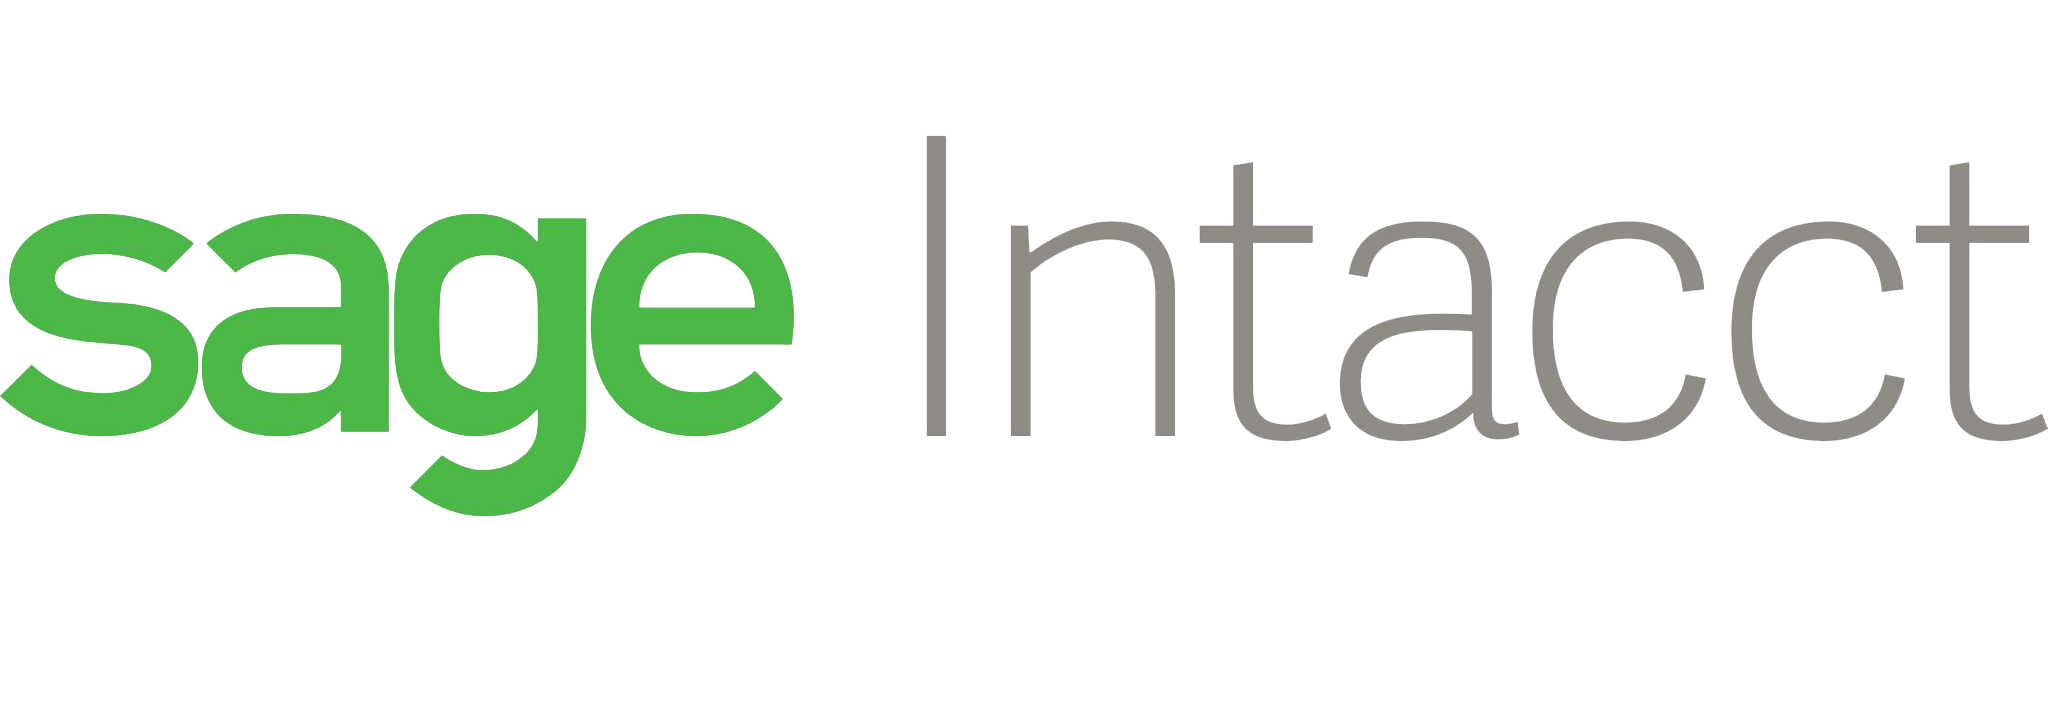 Sage-Intacct-logo